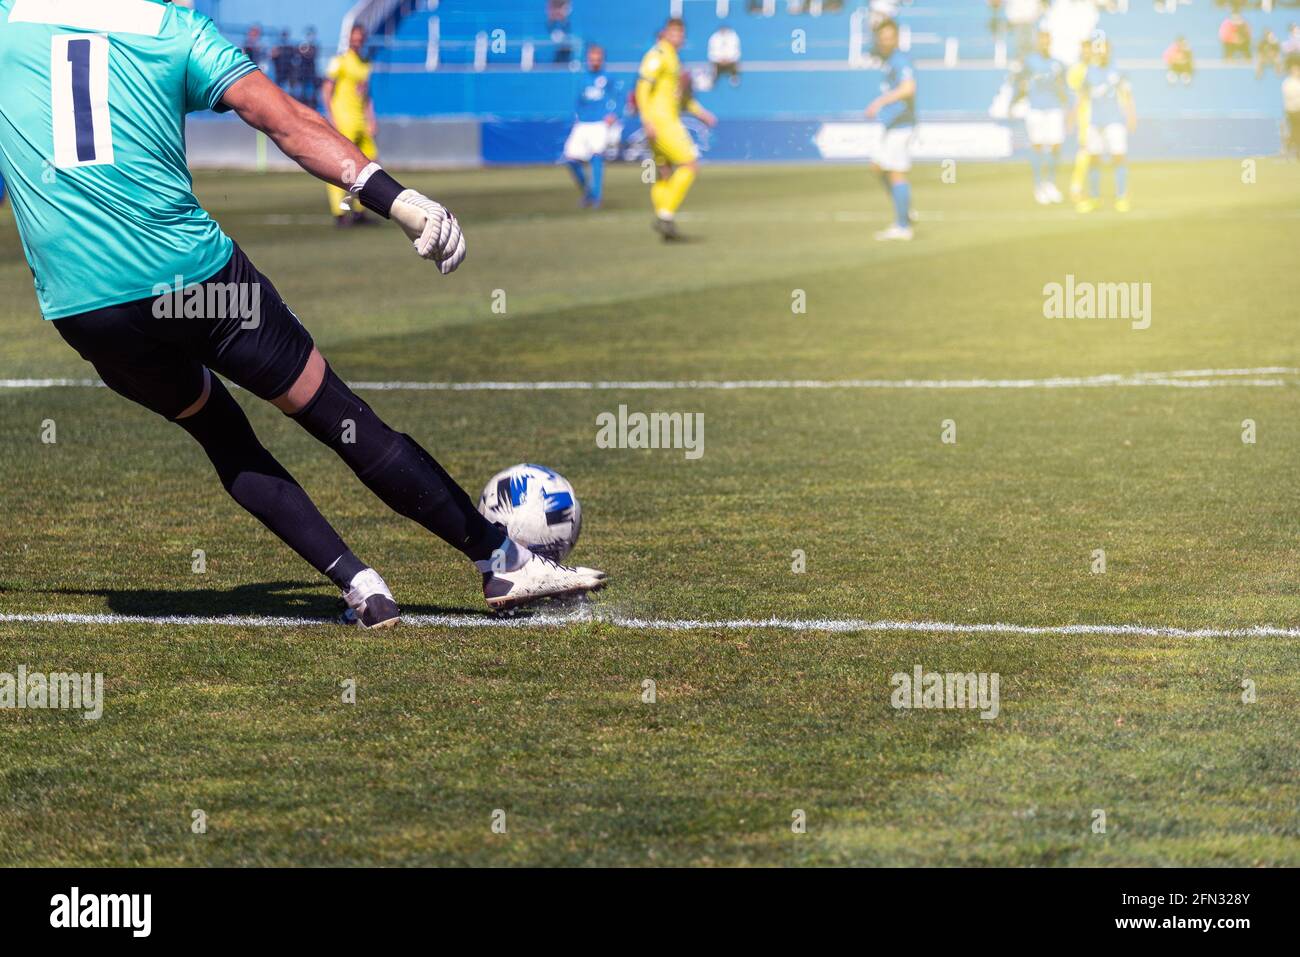 le joueur de football frappe le ballon avec sa jambe droite surface d'herbe naturelle Banque D'Images